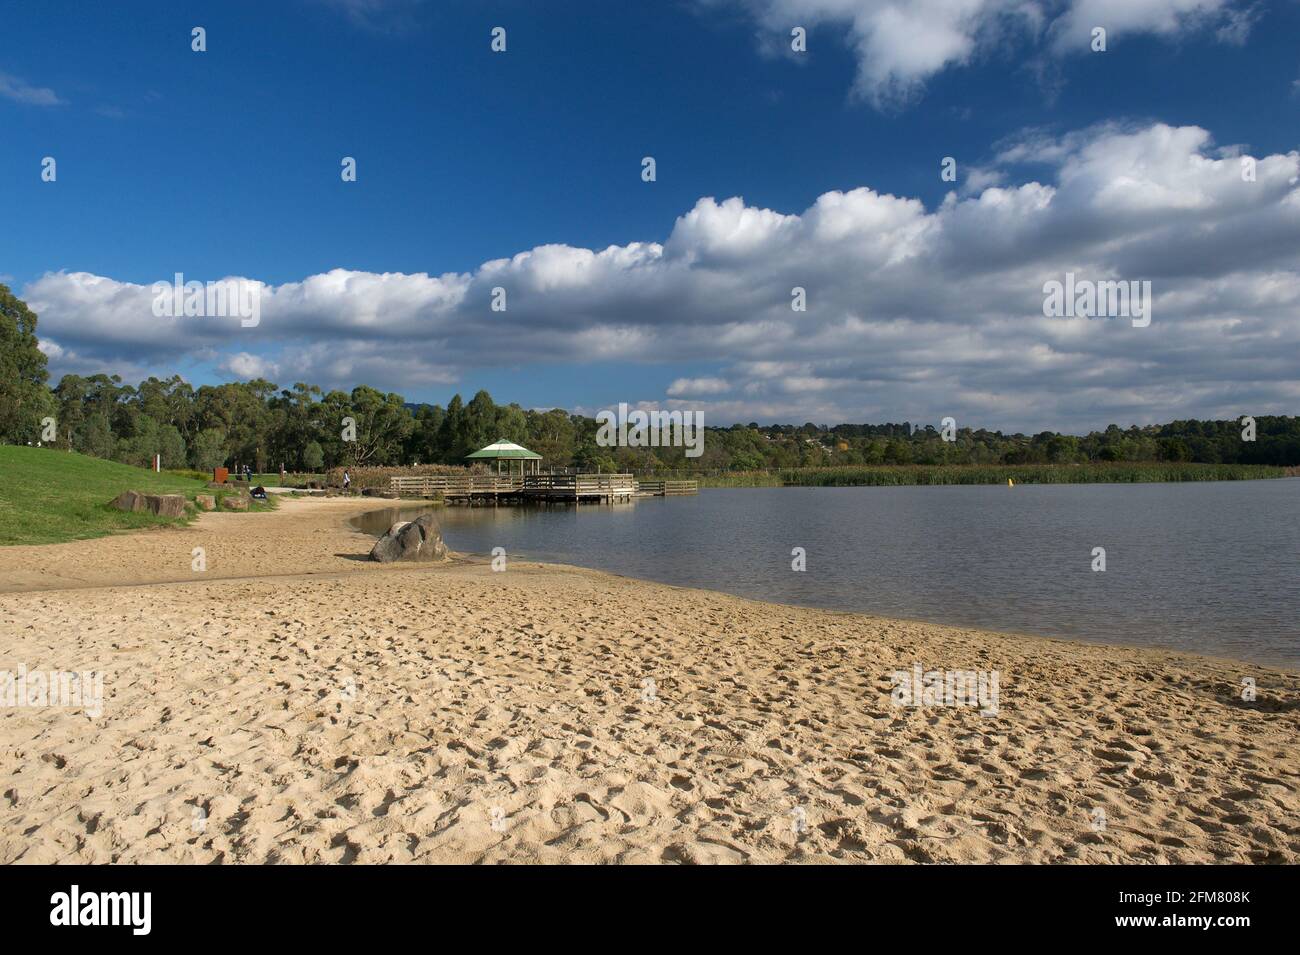 Plage de sable de Lillydale Lake. Le lac porte le nom du Shire de Lillydale, avec un double 'l', contrairement à la ville de Lilydale, avec un seul 'l'. Banque D'Images